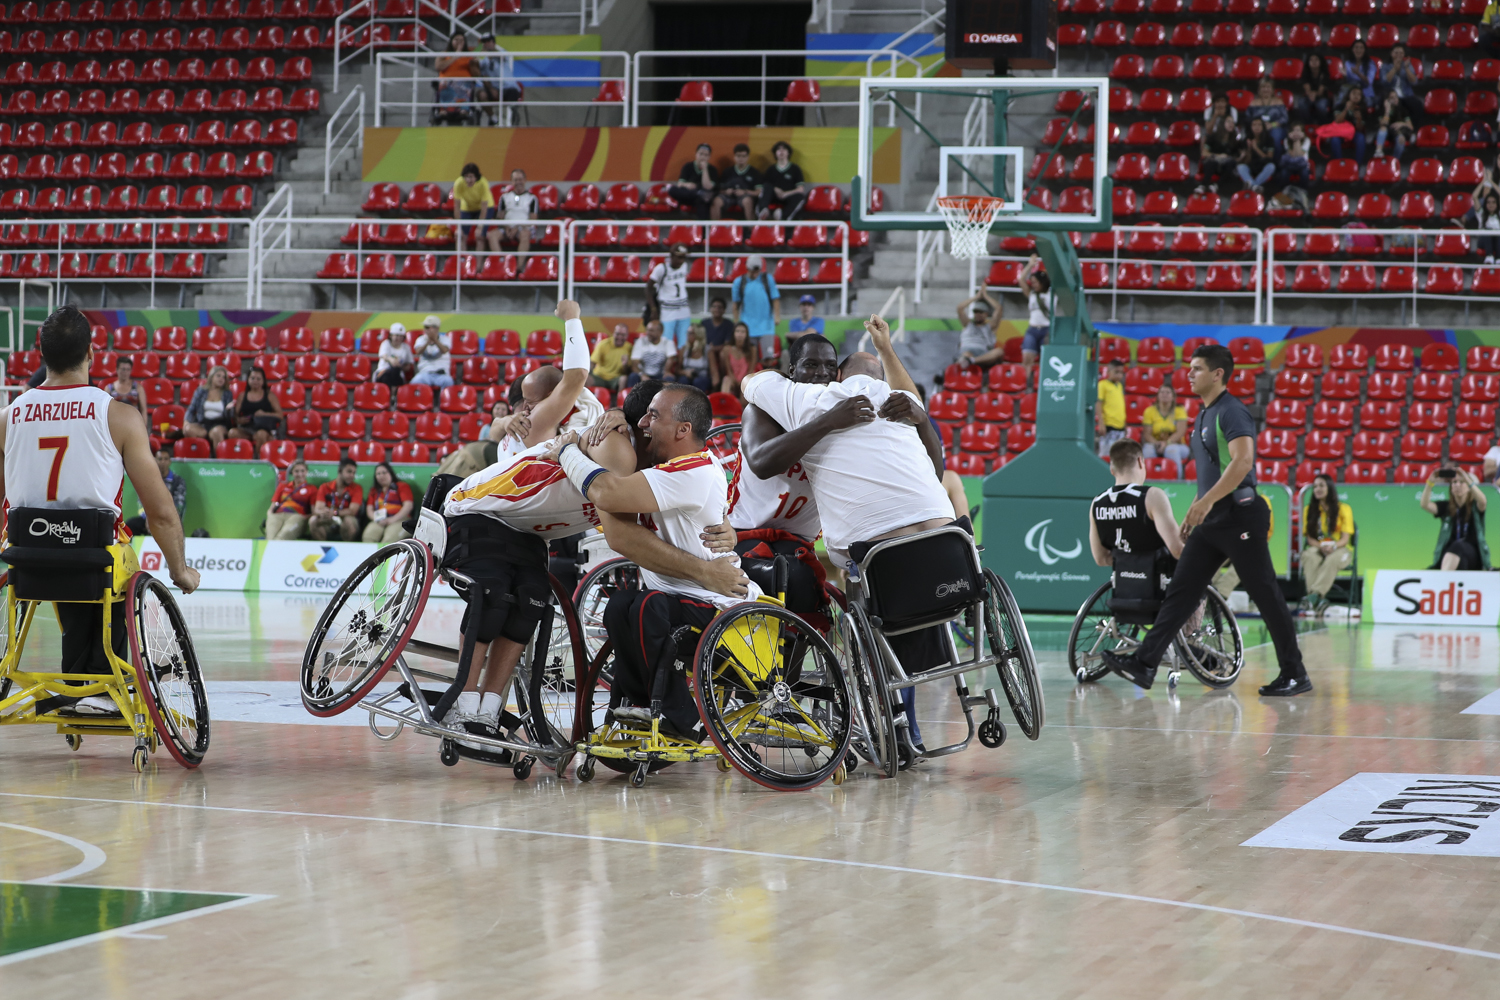 Victoria de la Selección Española de baloncesto en silla de ruedas contra la selección Alemana por 70 - 66.